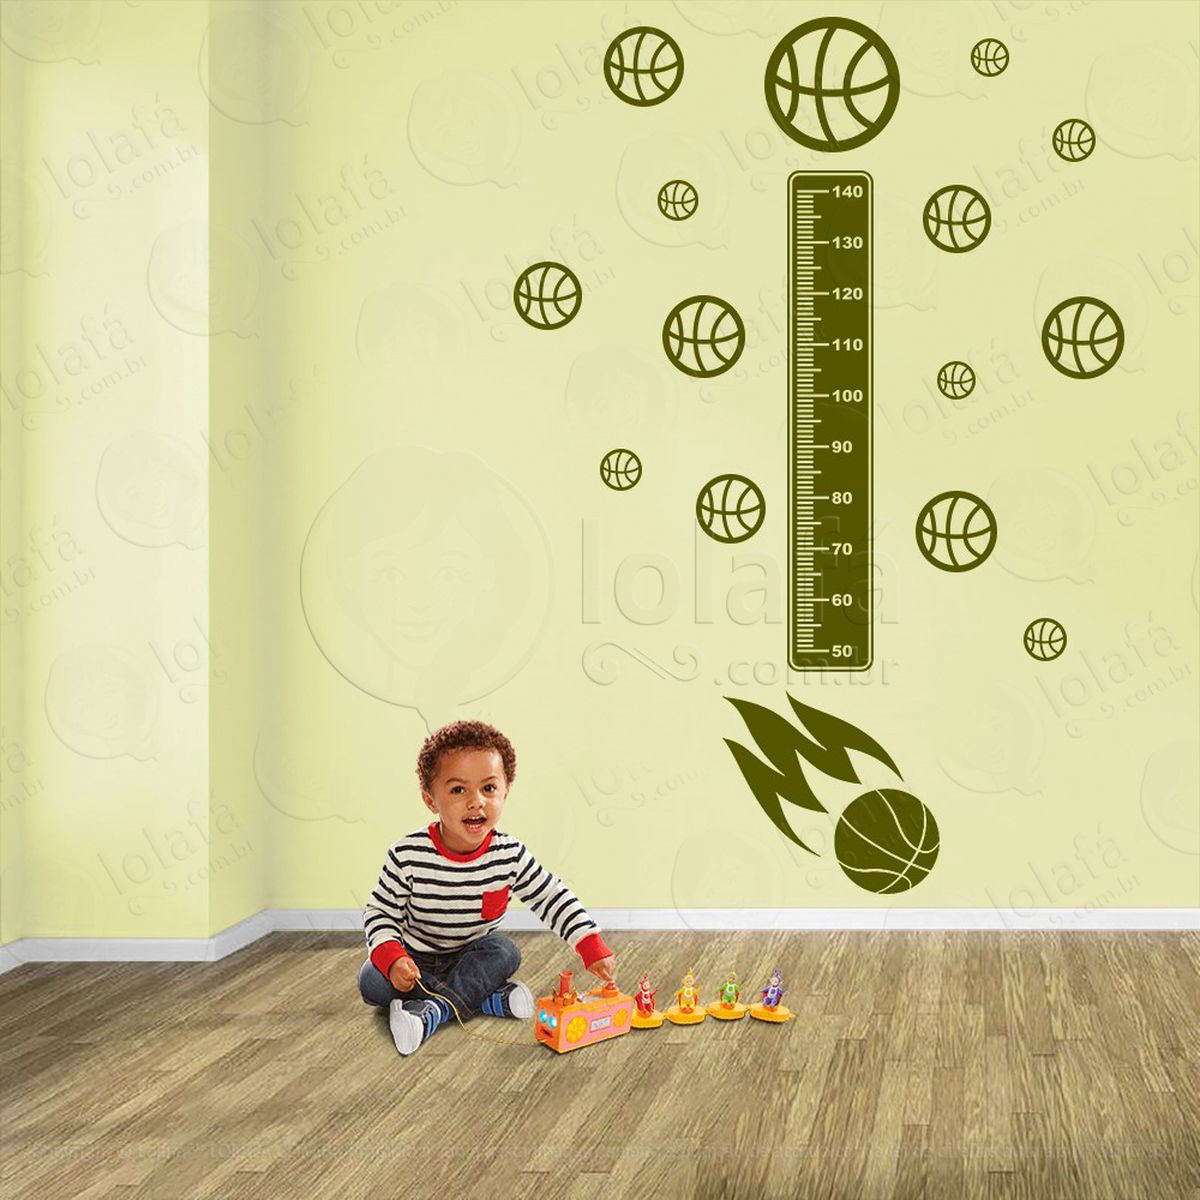 basquetebol e bolas de basquete adesivo régua de crescimento infantil, medidor de altura para quarto, porta e parede - mod:274